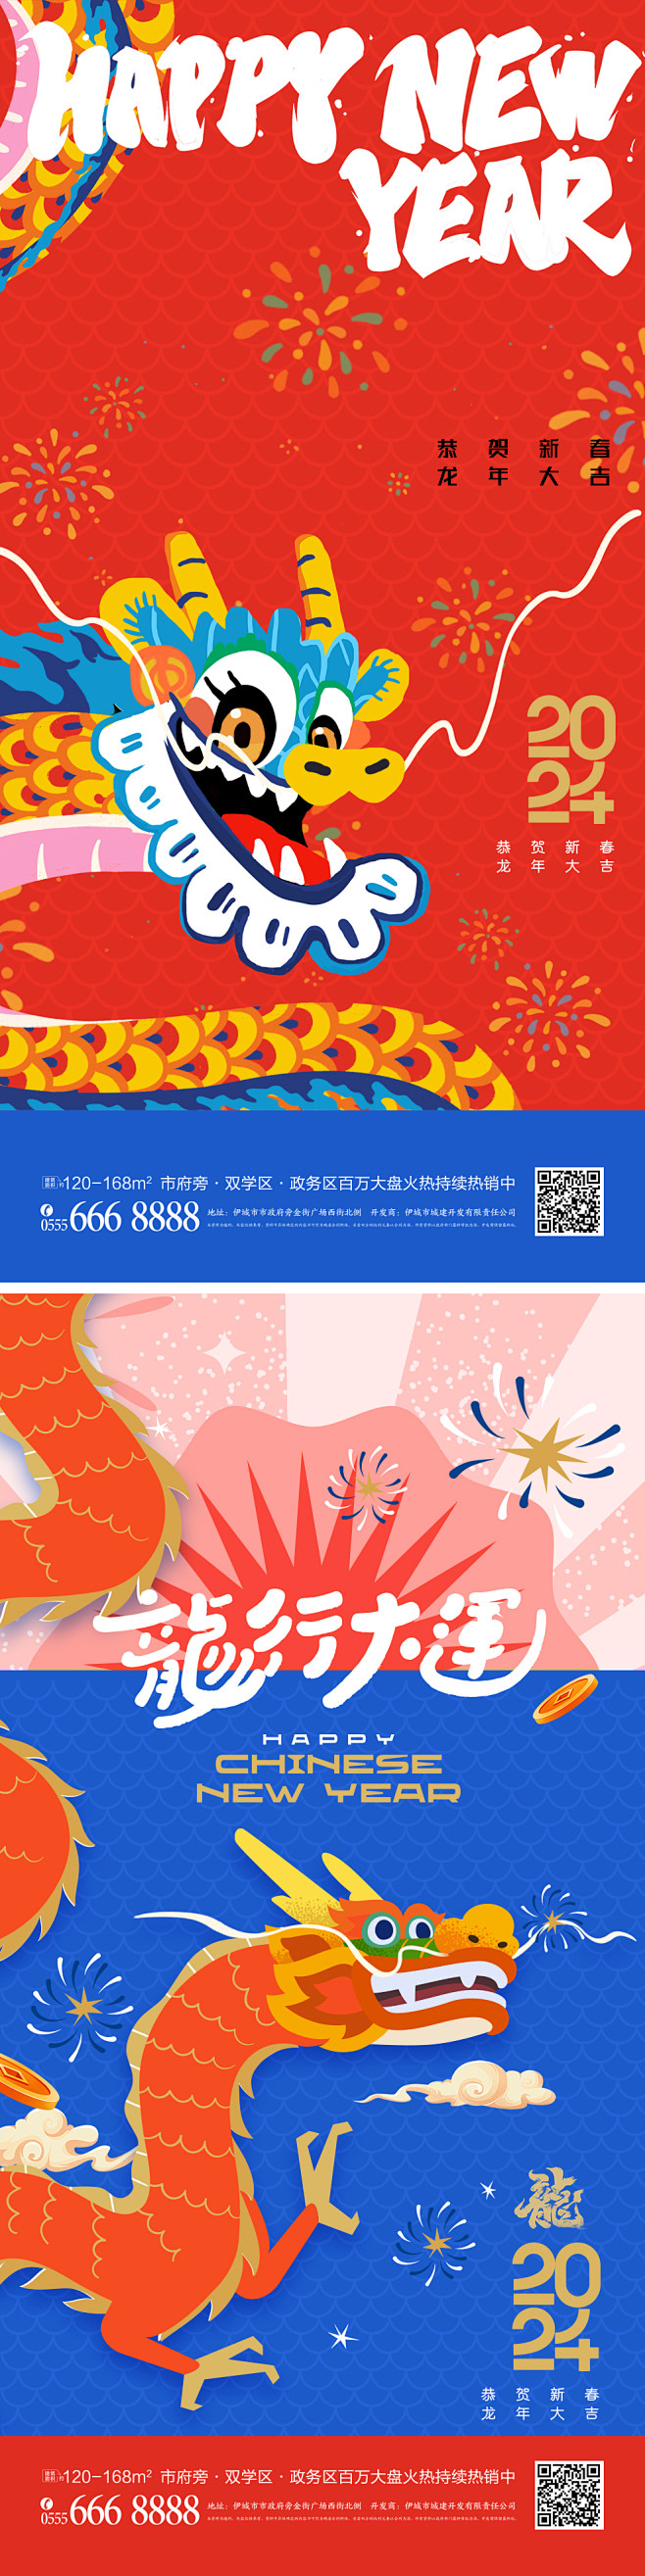 龙年新年国潮节日系列海报